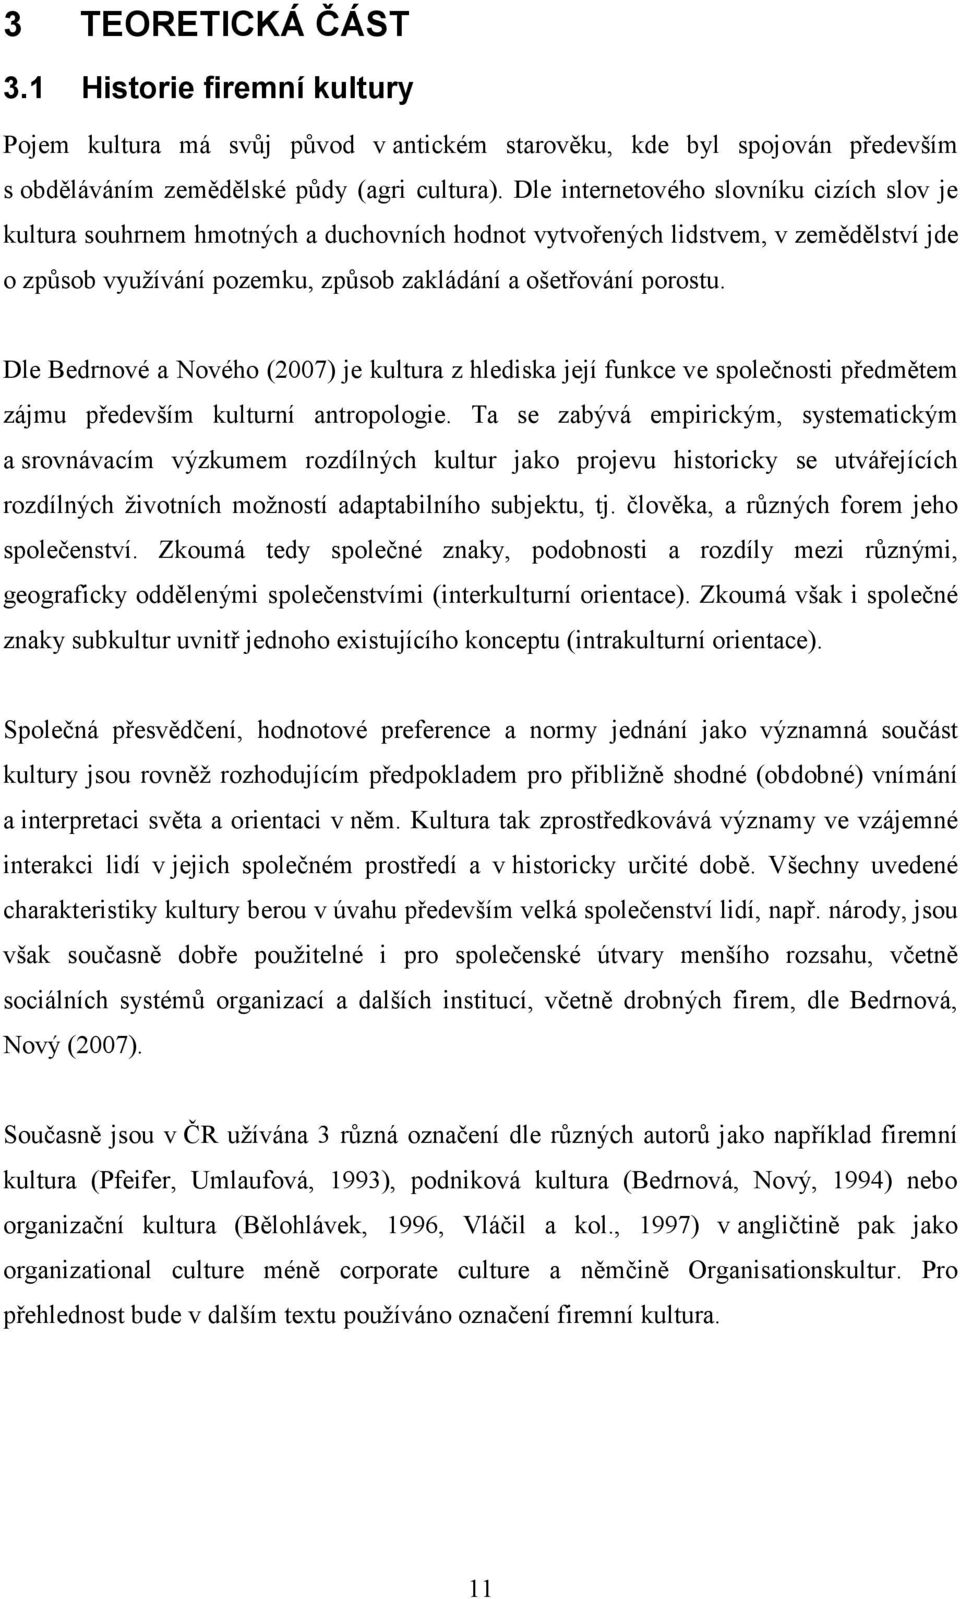 Dle Bedrnové a Nového (2007) je kultura z hlediska její funkce ve společnosti předmětem zájmu především kulturní antropologie.